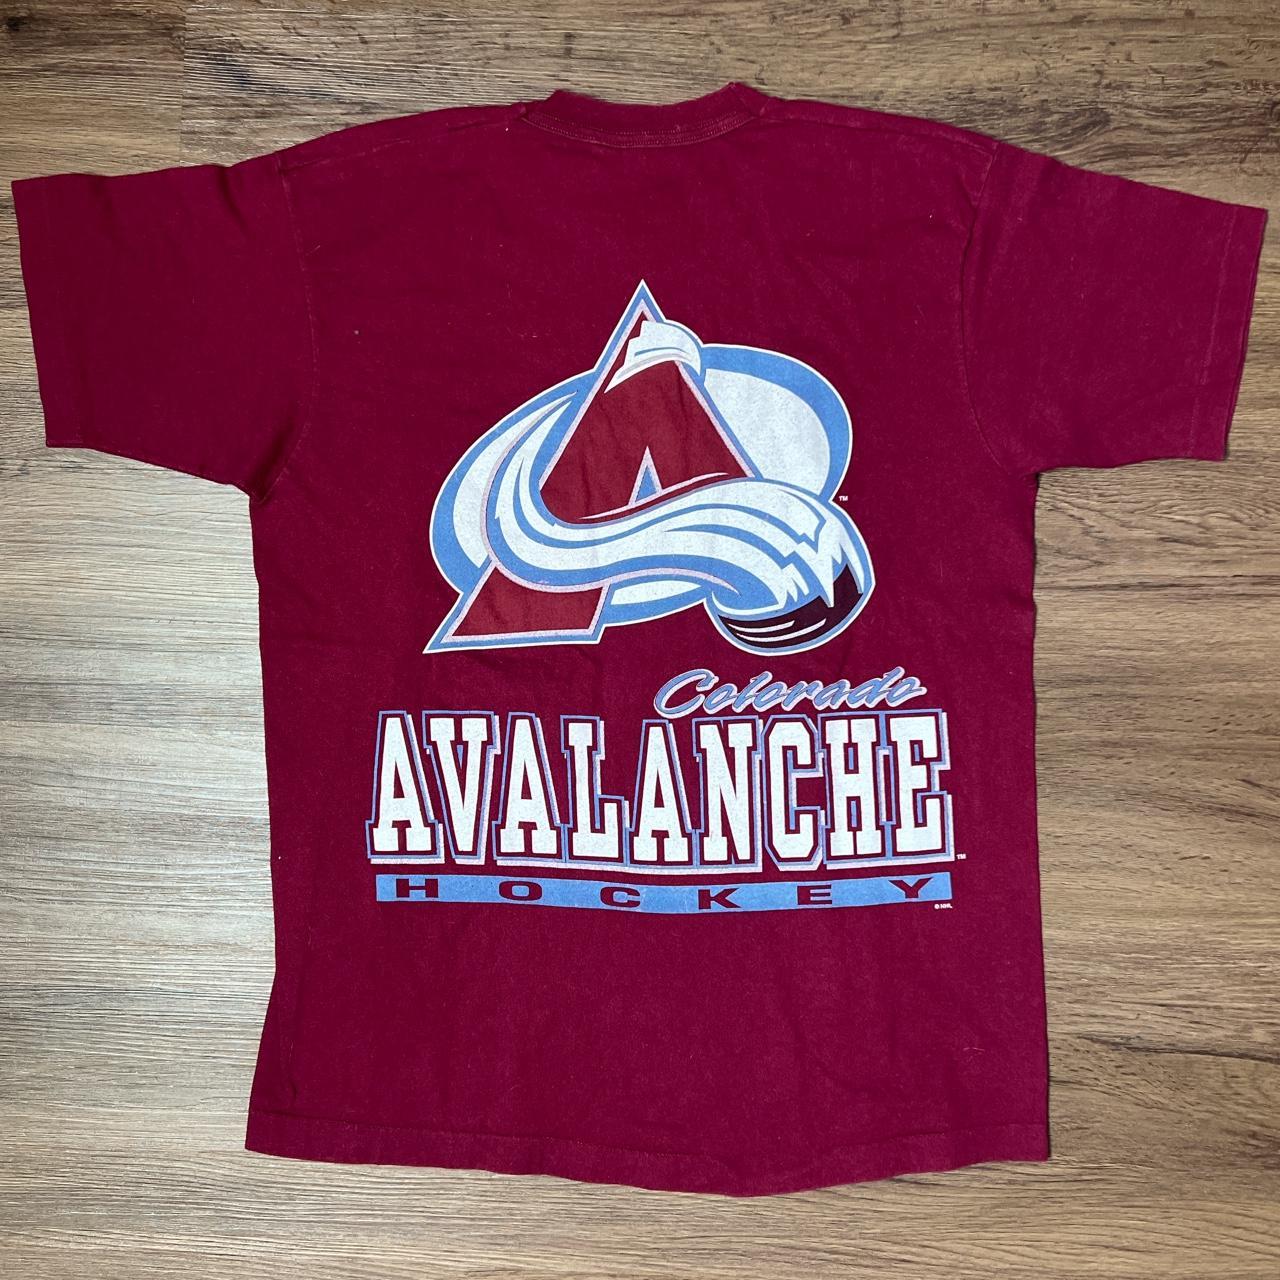 Vintage Colorado Avalanche sweatshirt NHL hockey - Depop